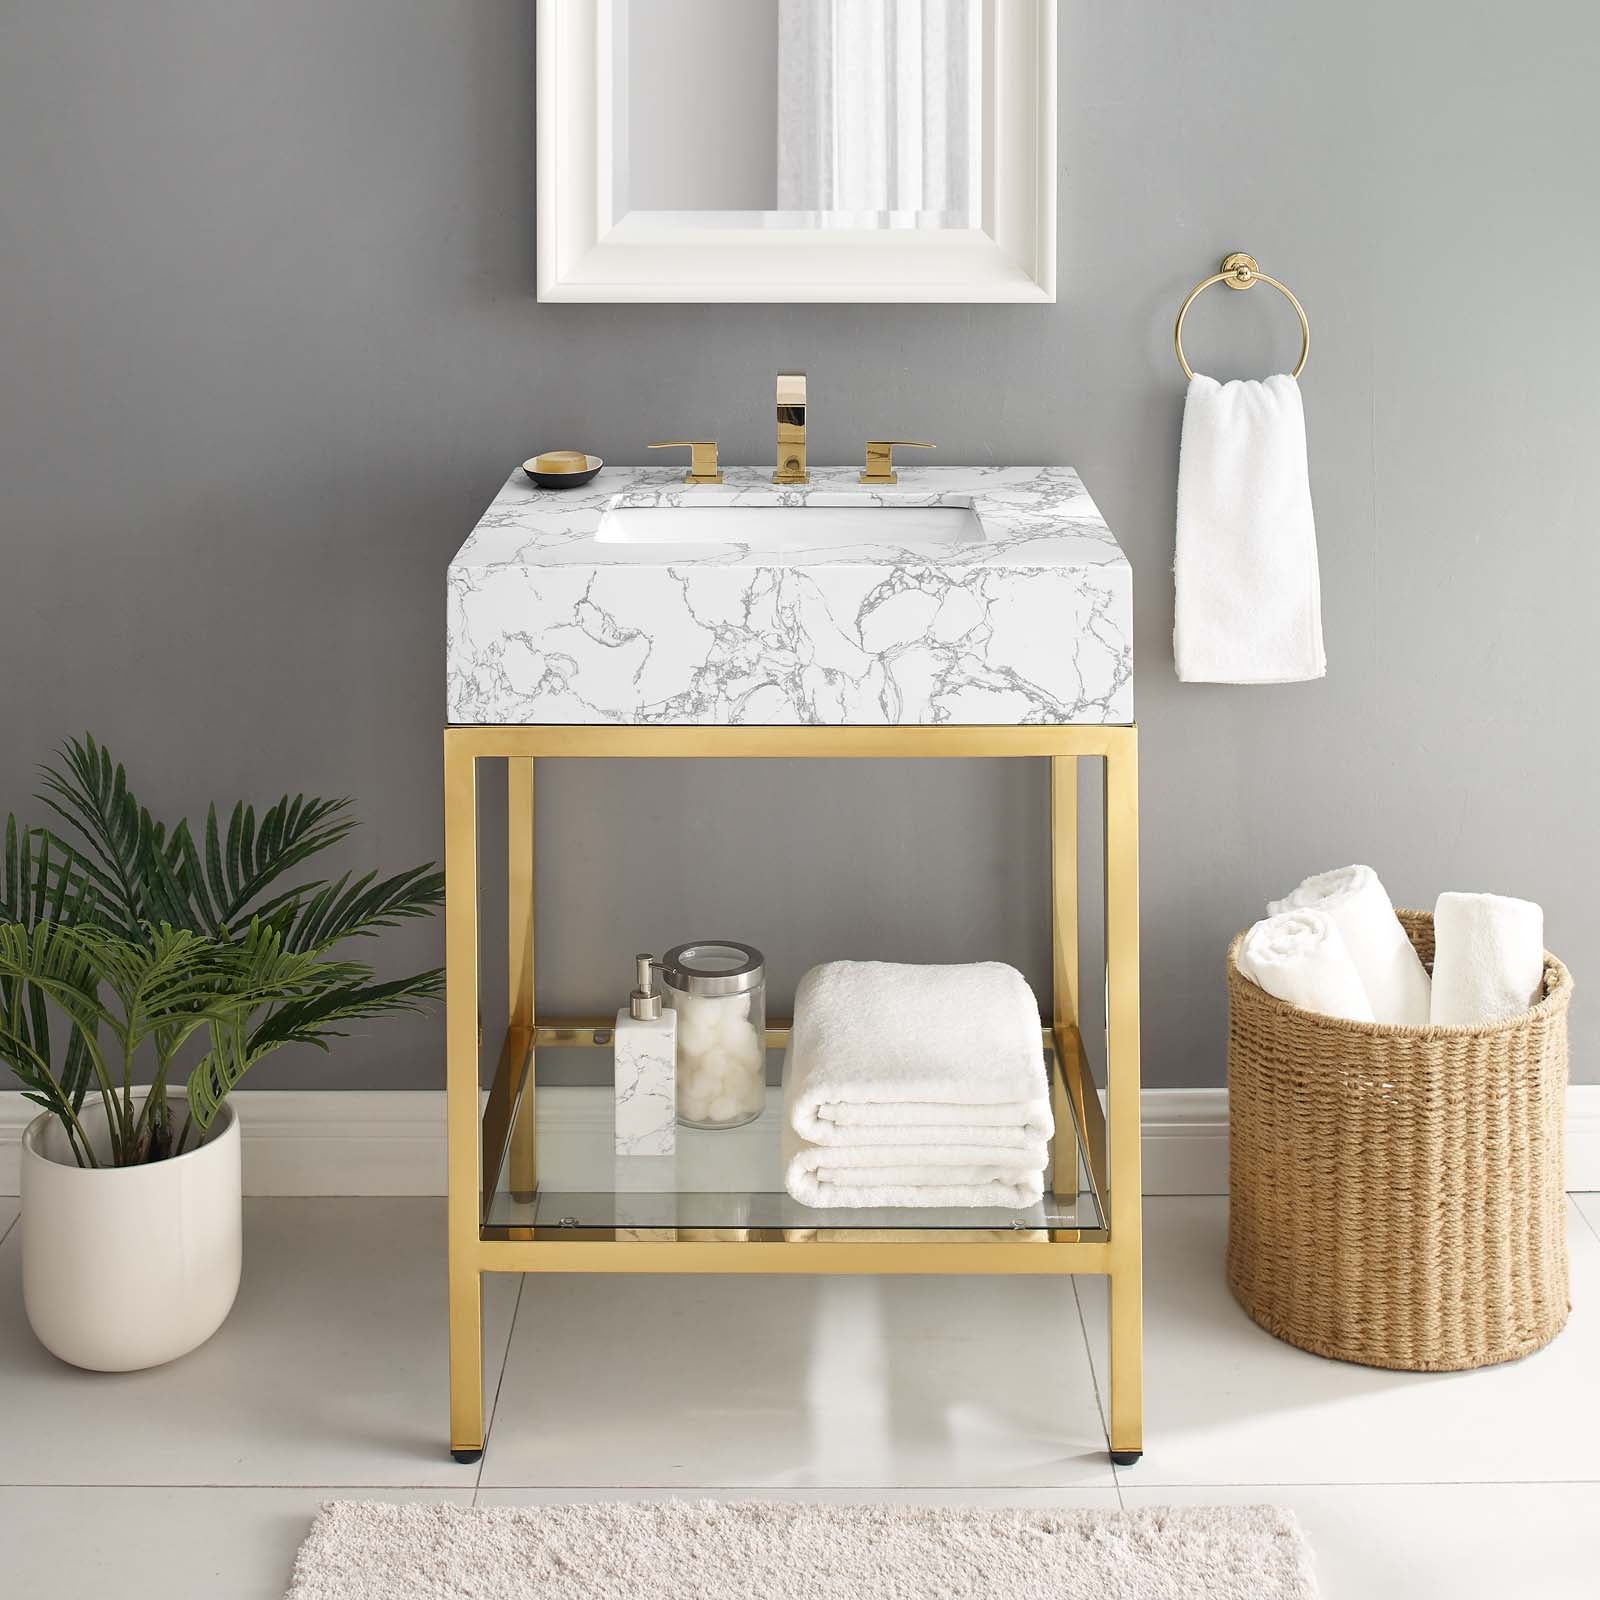 Kingsley 26" Gold Stainless Steel Bathroom Vanity - East Shore Modern Home Furnishings